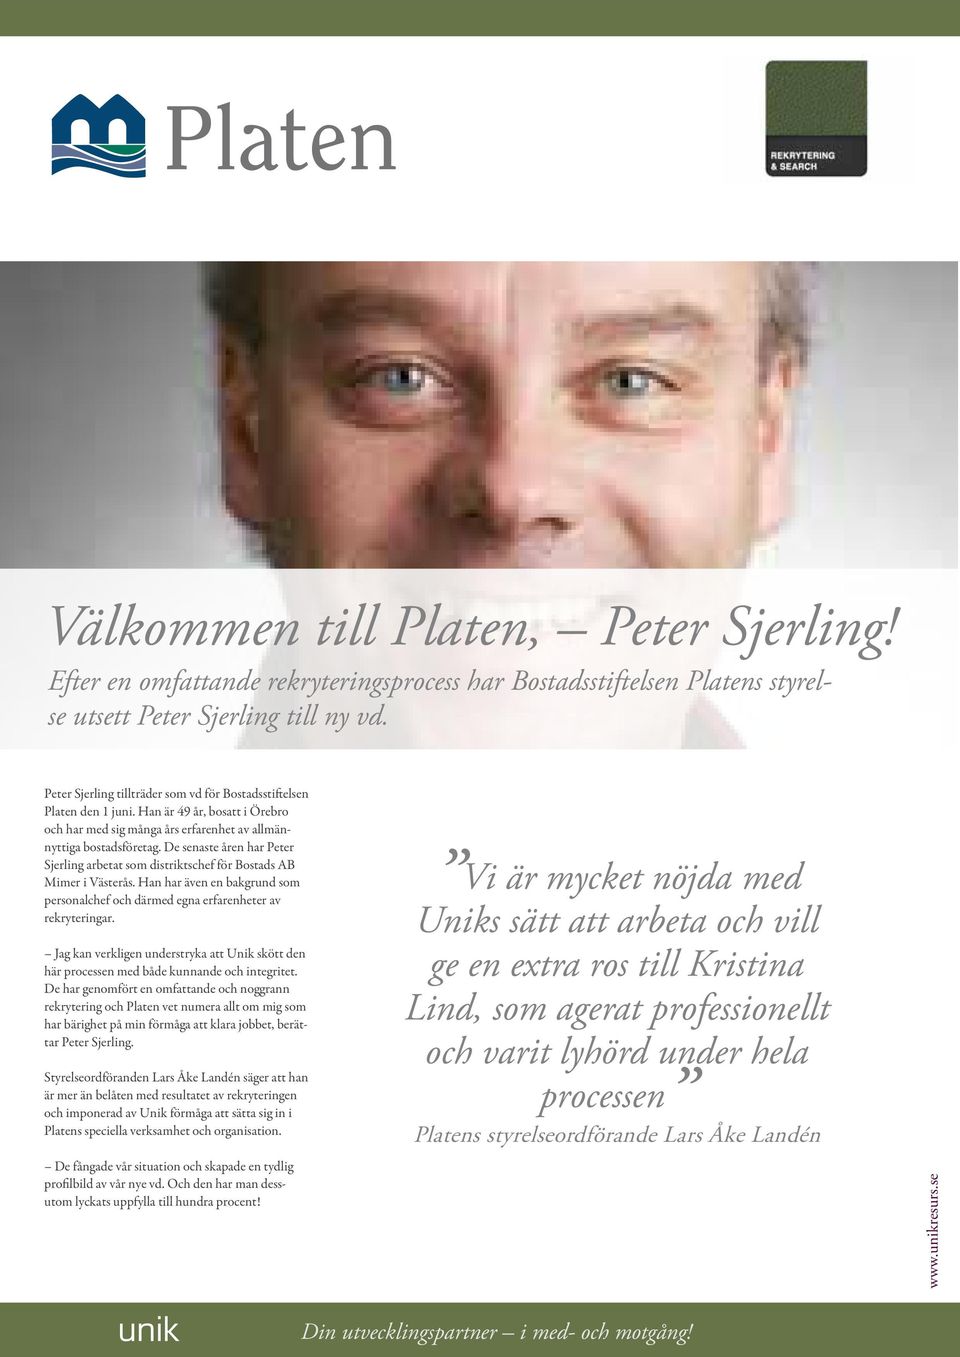 De senaste åren har Peter Sjerling arbetat som distriktschef för Bostads AB Mimer i Västerås. Han har även en bakgrund som personalchef och därmed egna erfarenheter av rekryteringar.